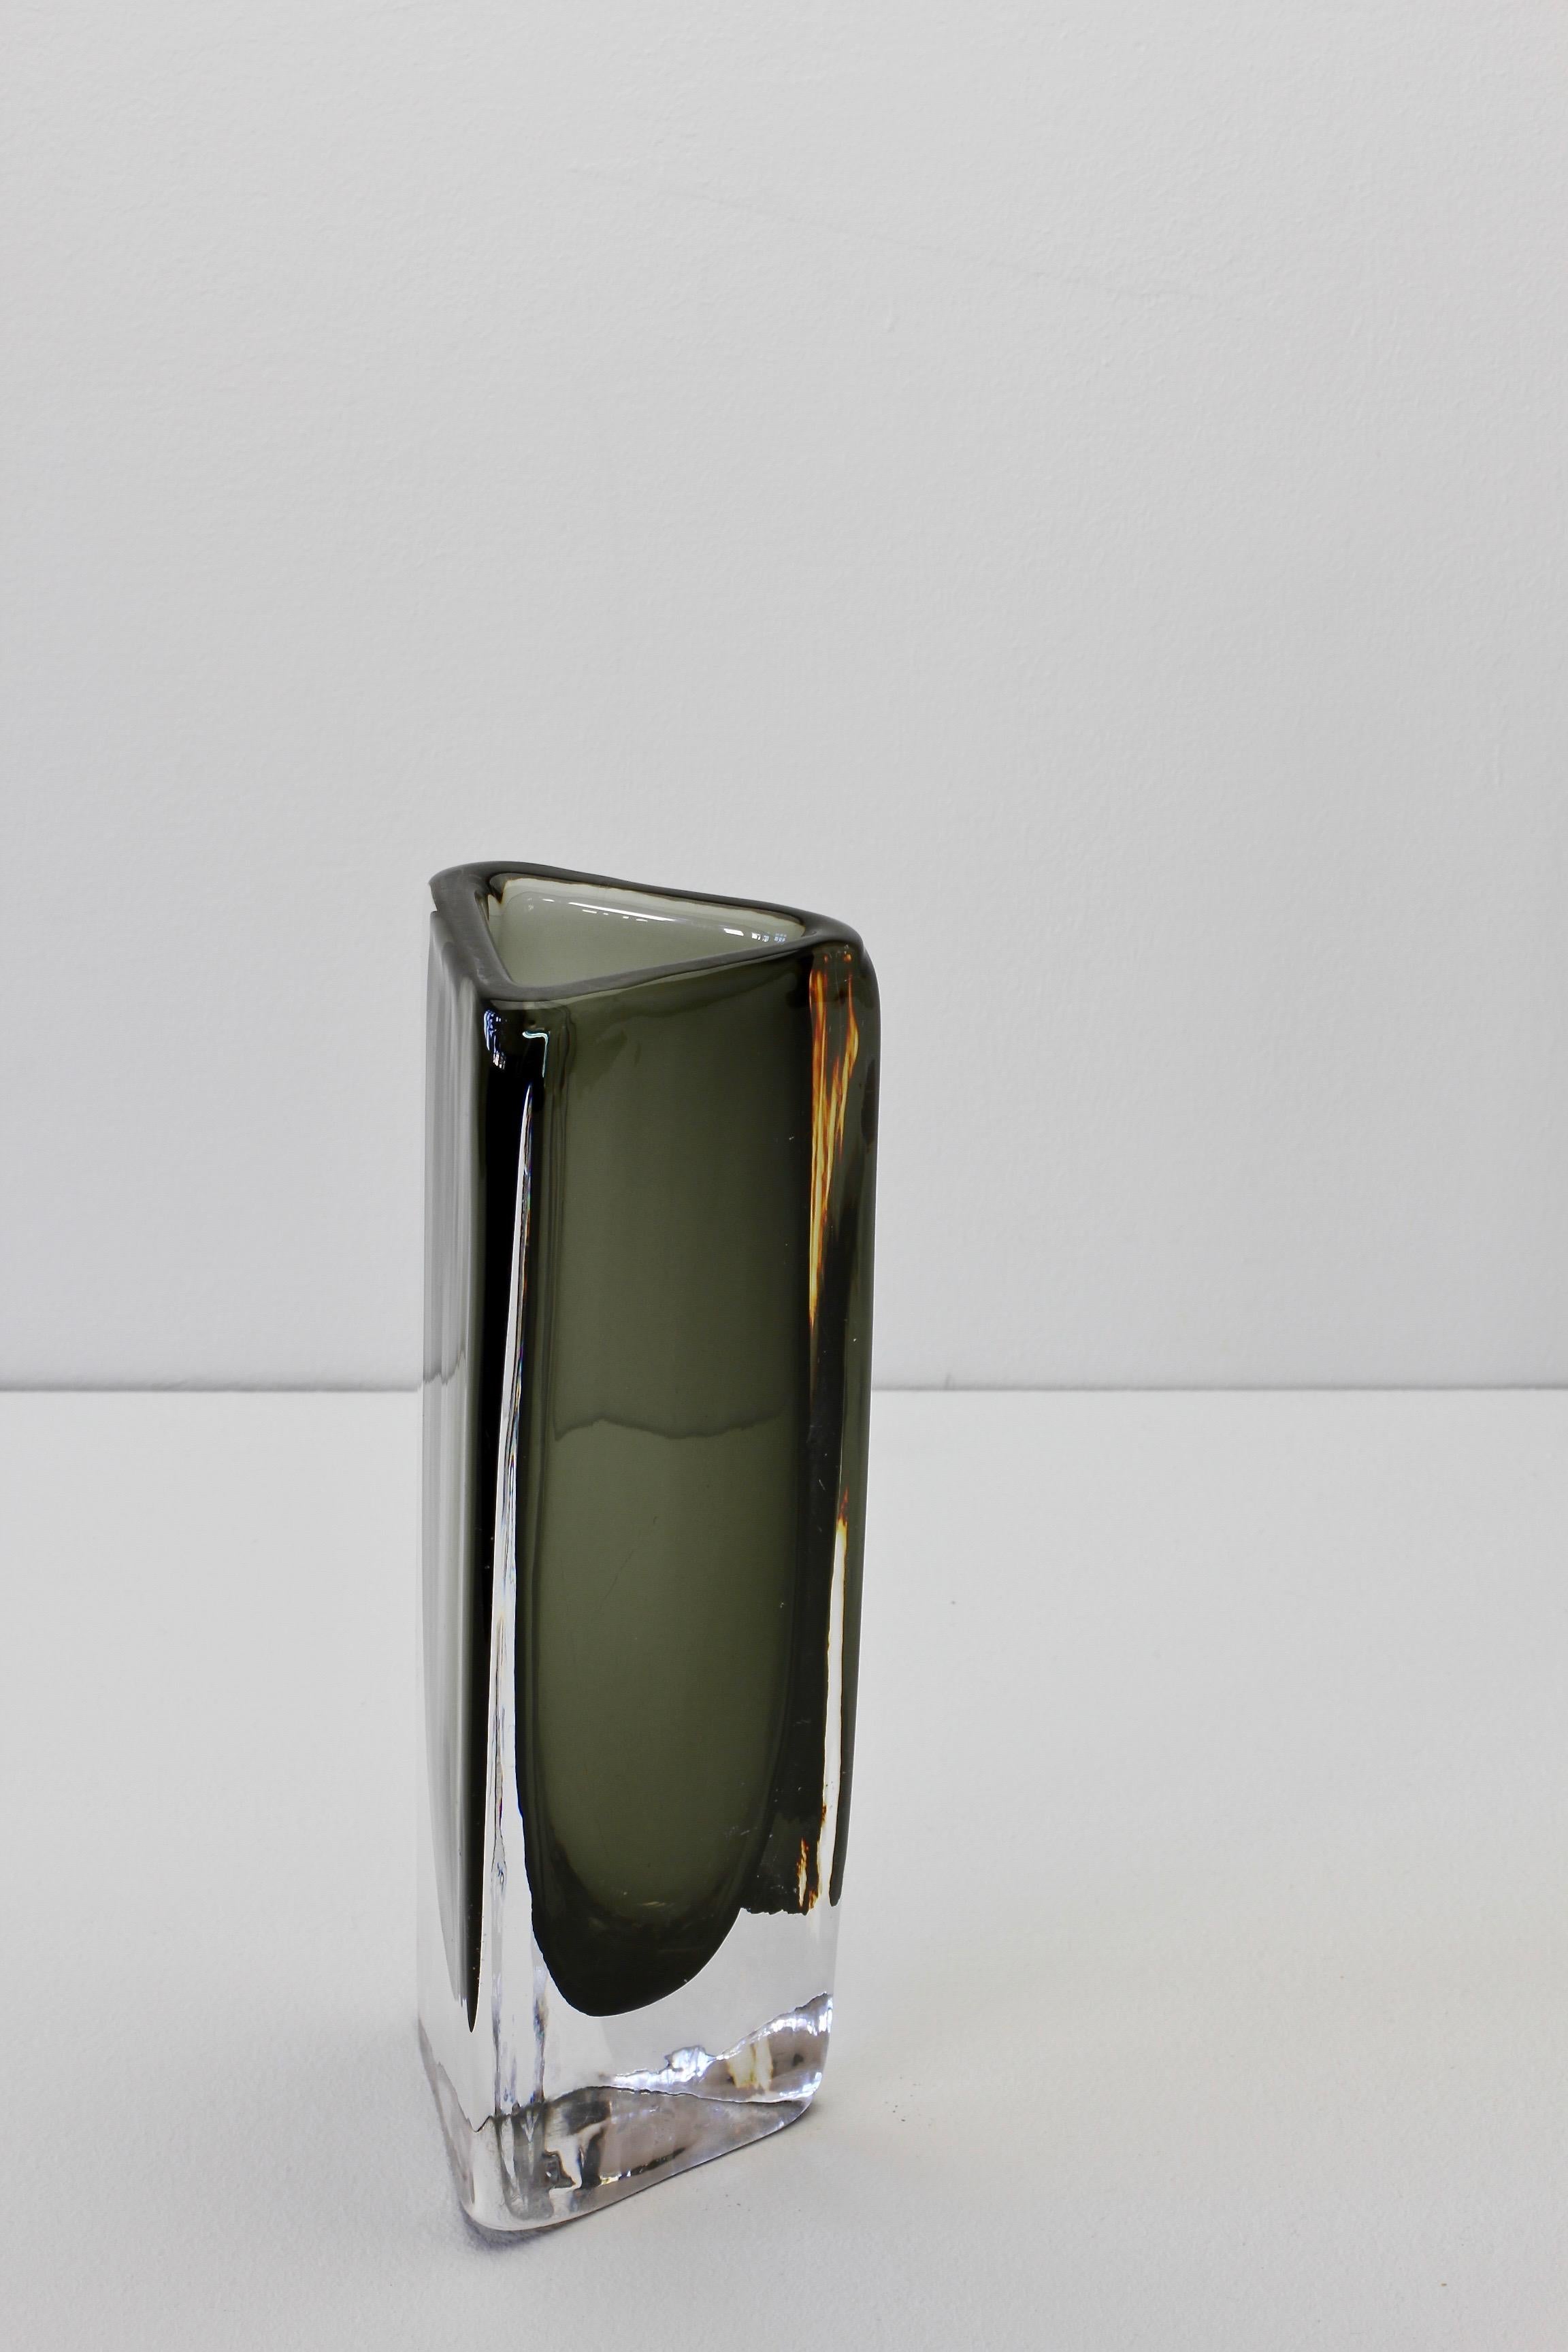 Tall 1950s Dark Toned Sommerso Vase Signed Nils Landberg for Orrefors Glass For Sale 6